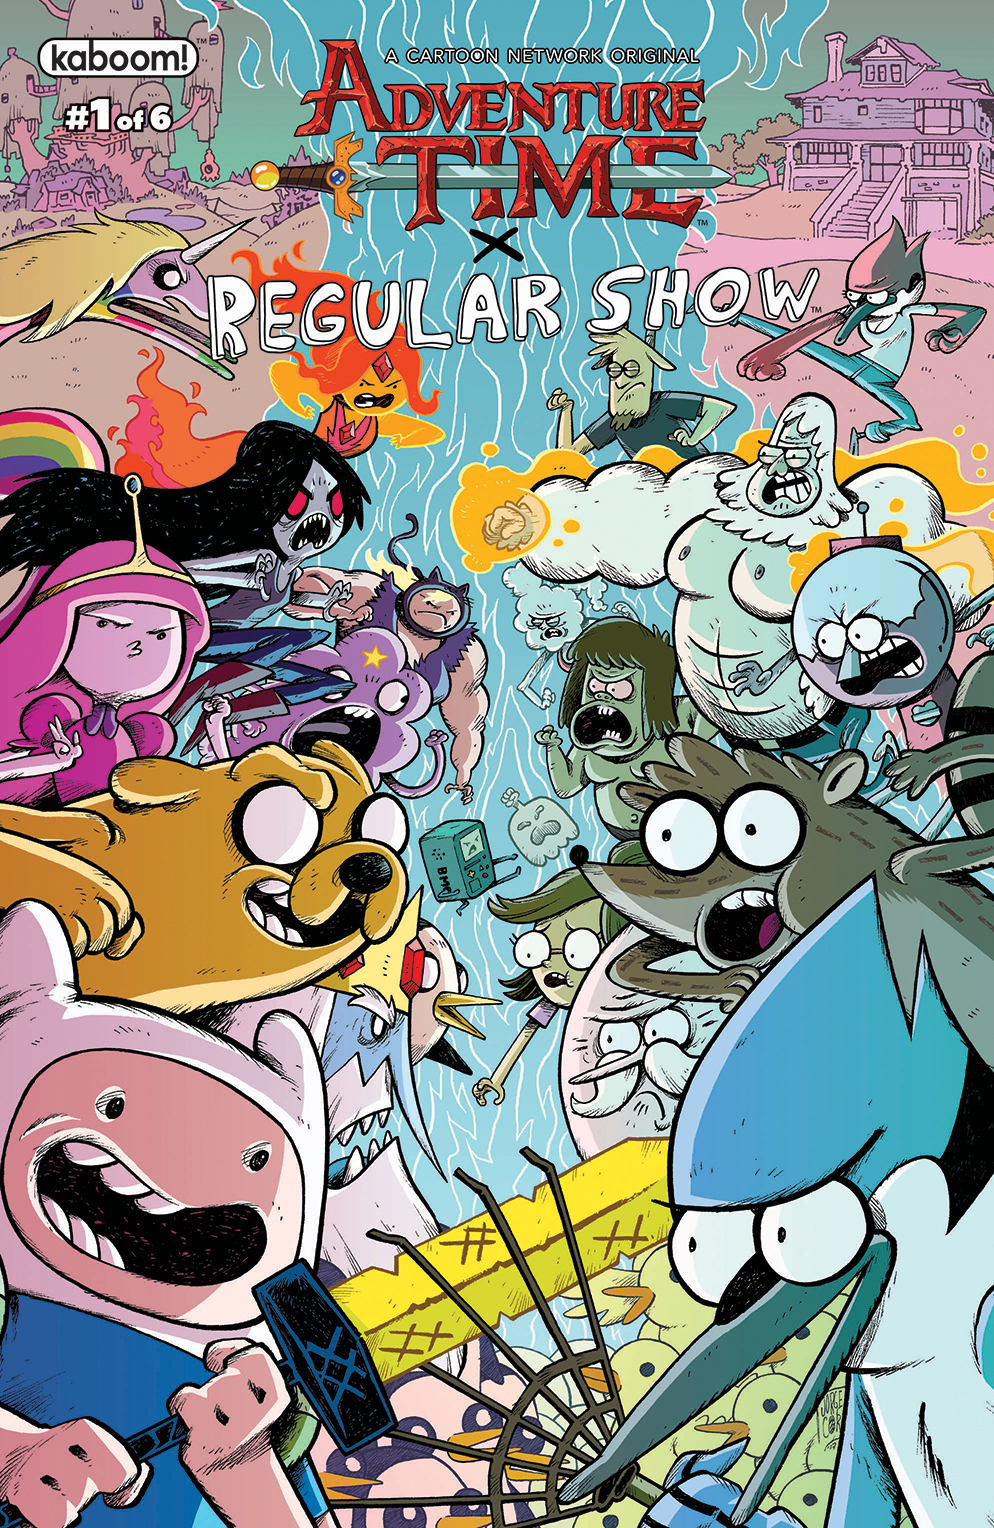 Regular Show Show Poster  Regular show, Cartoon network, Cartoon